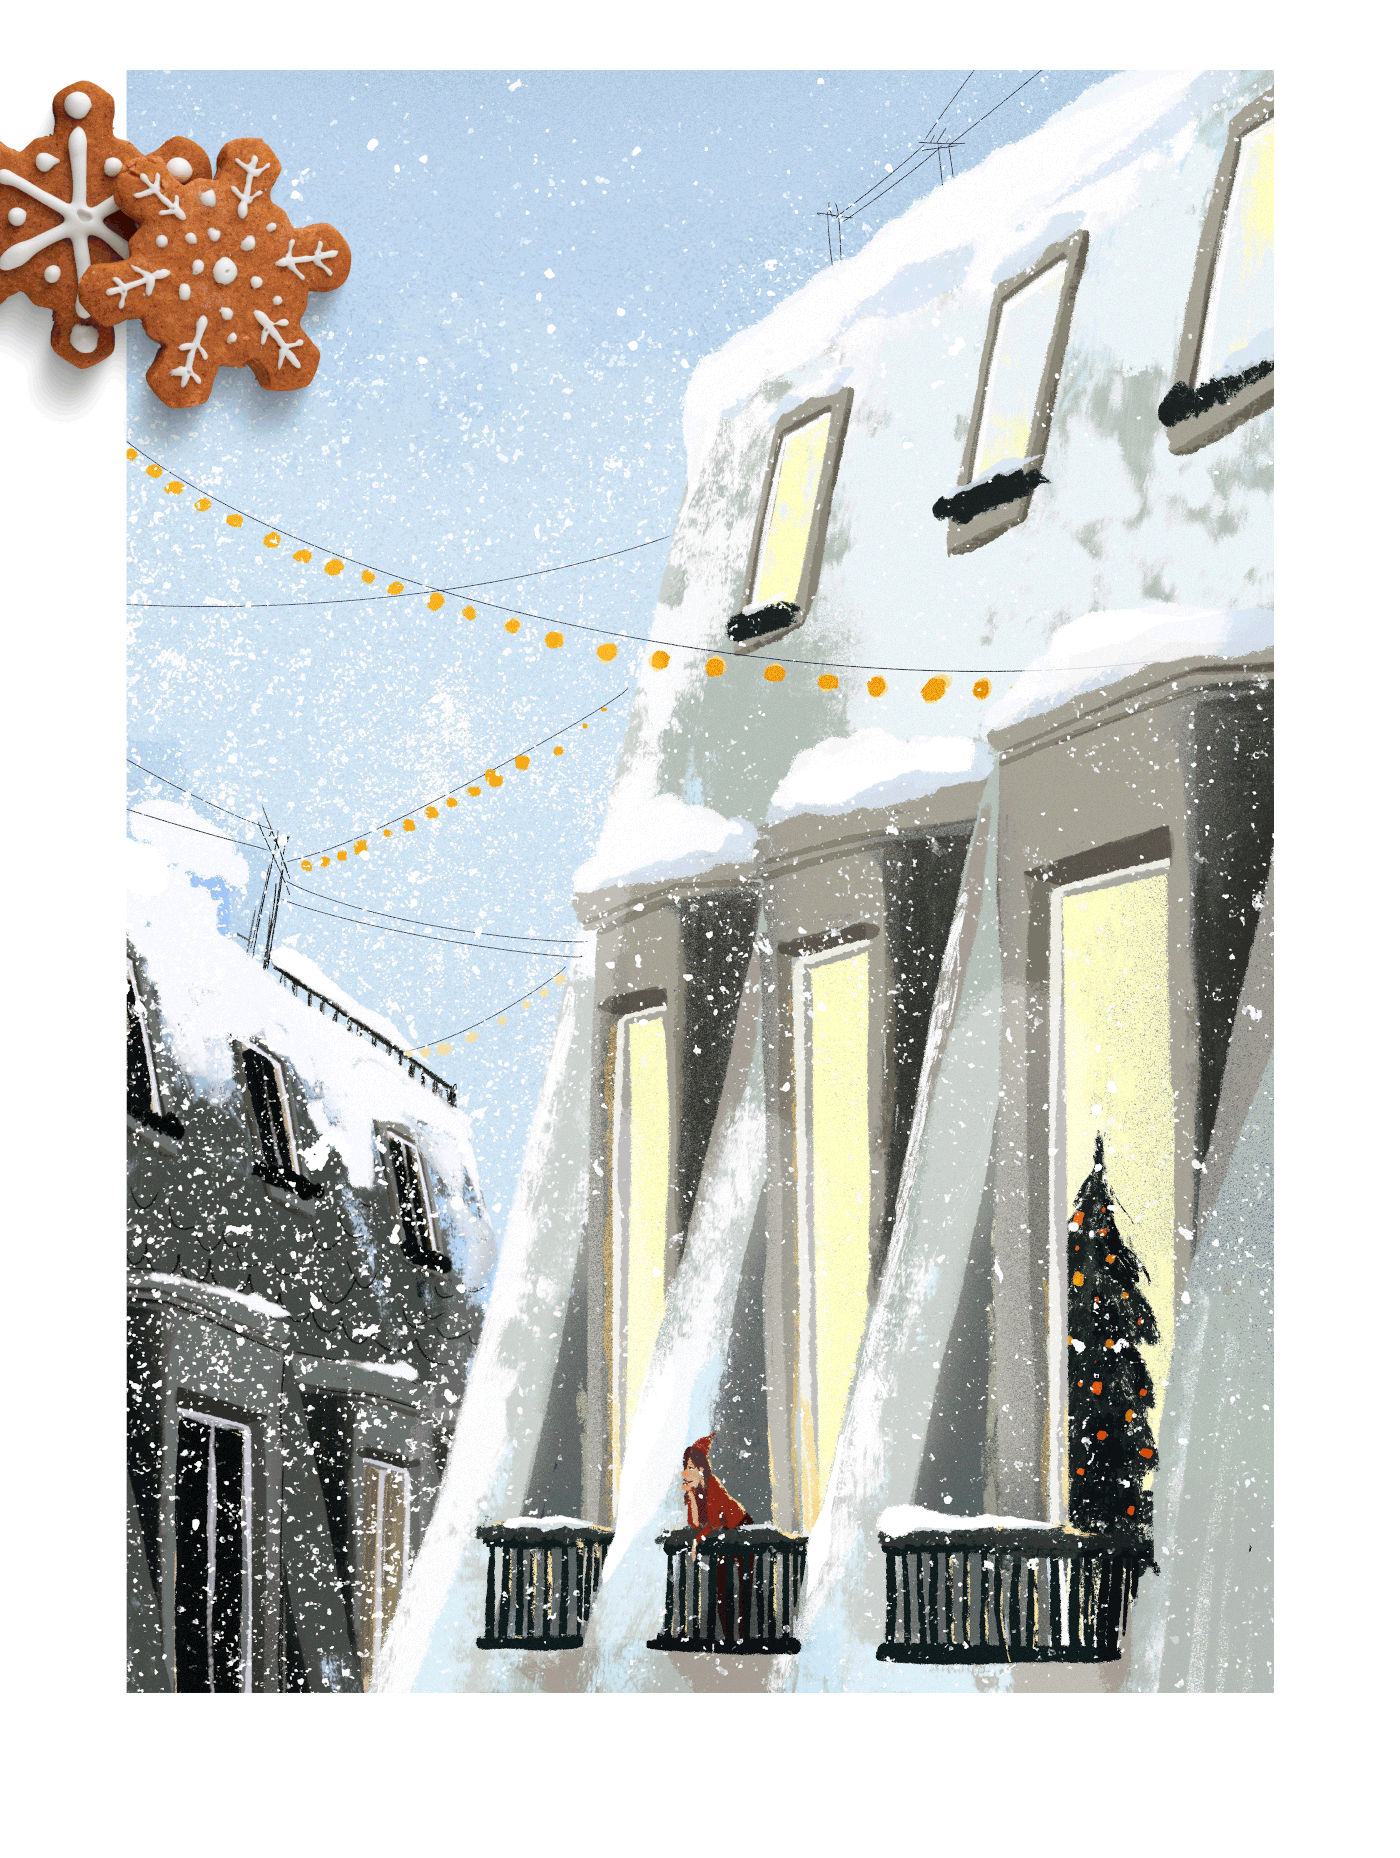 Девушка на заснеженном балконе смотрит на крыши и как идет снег